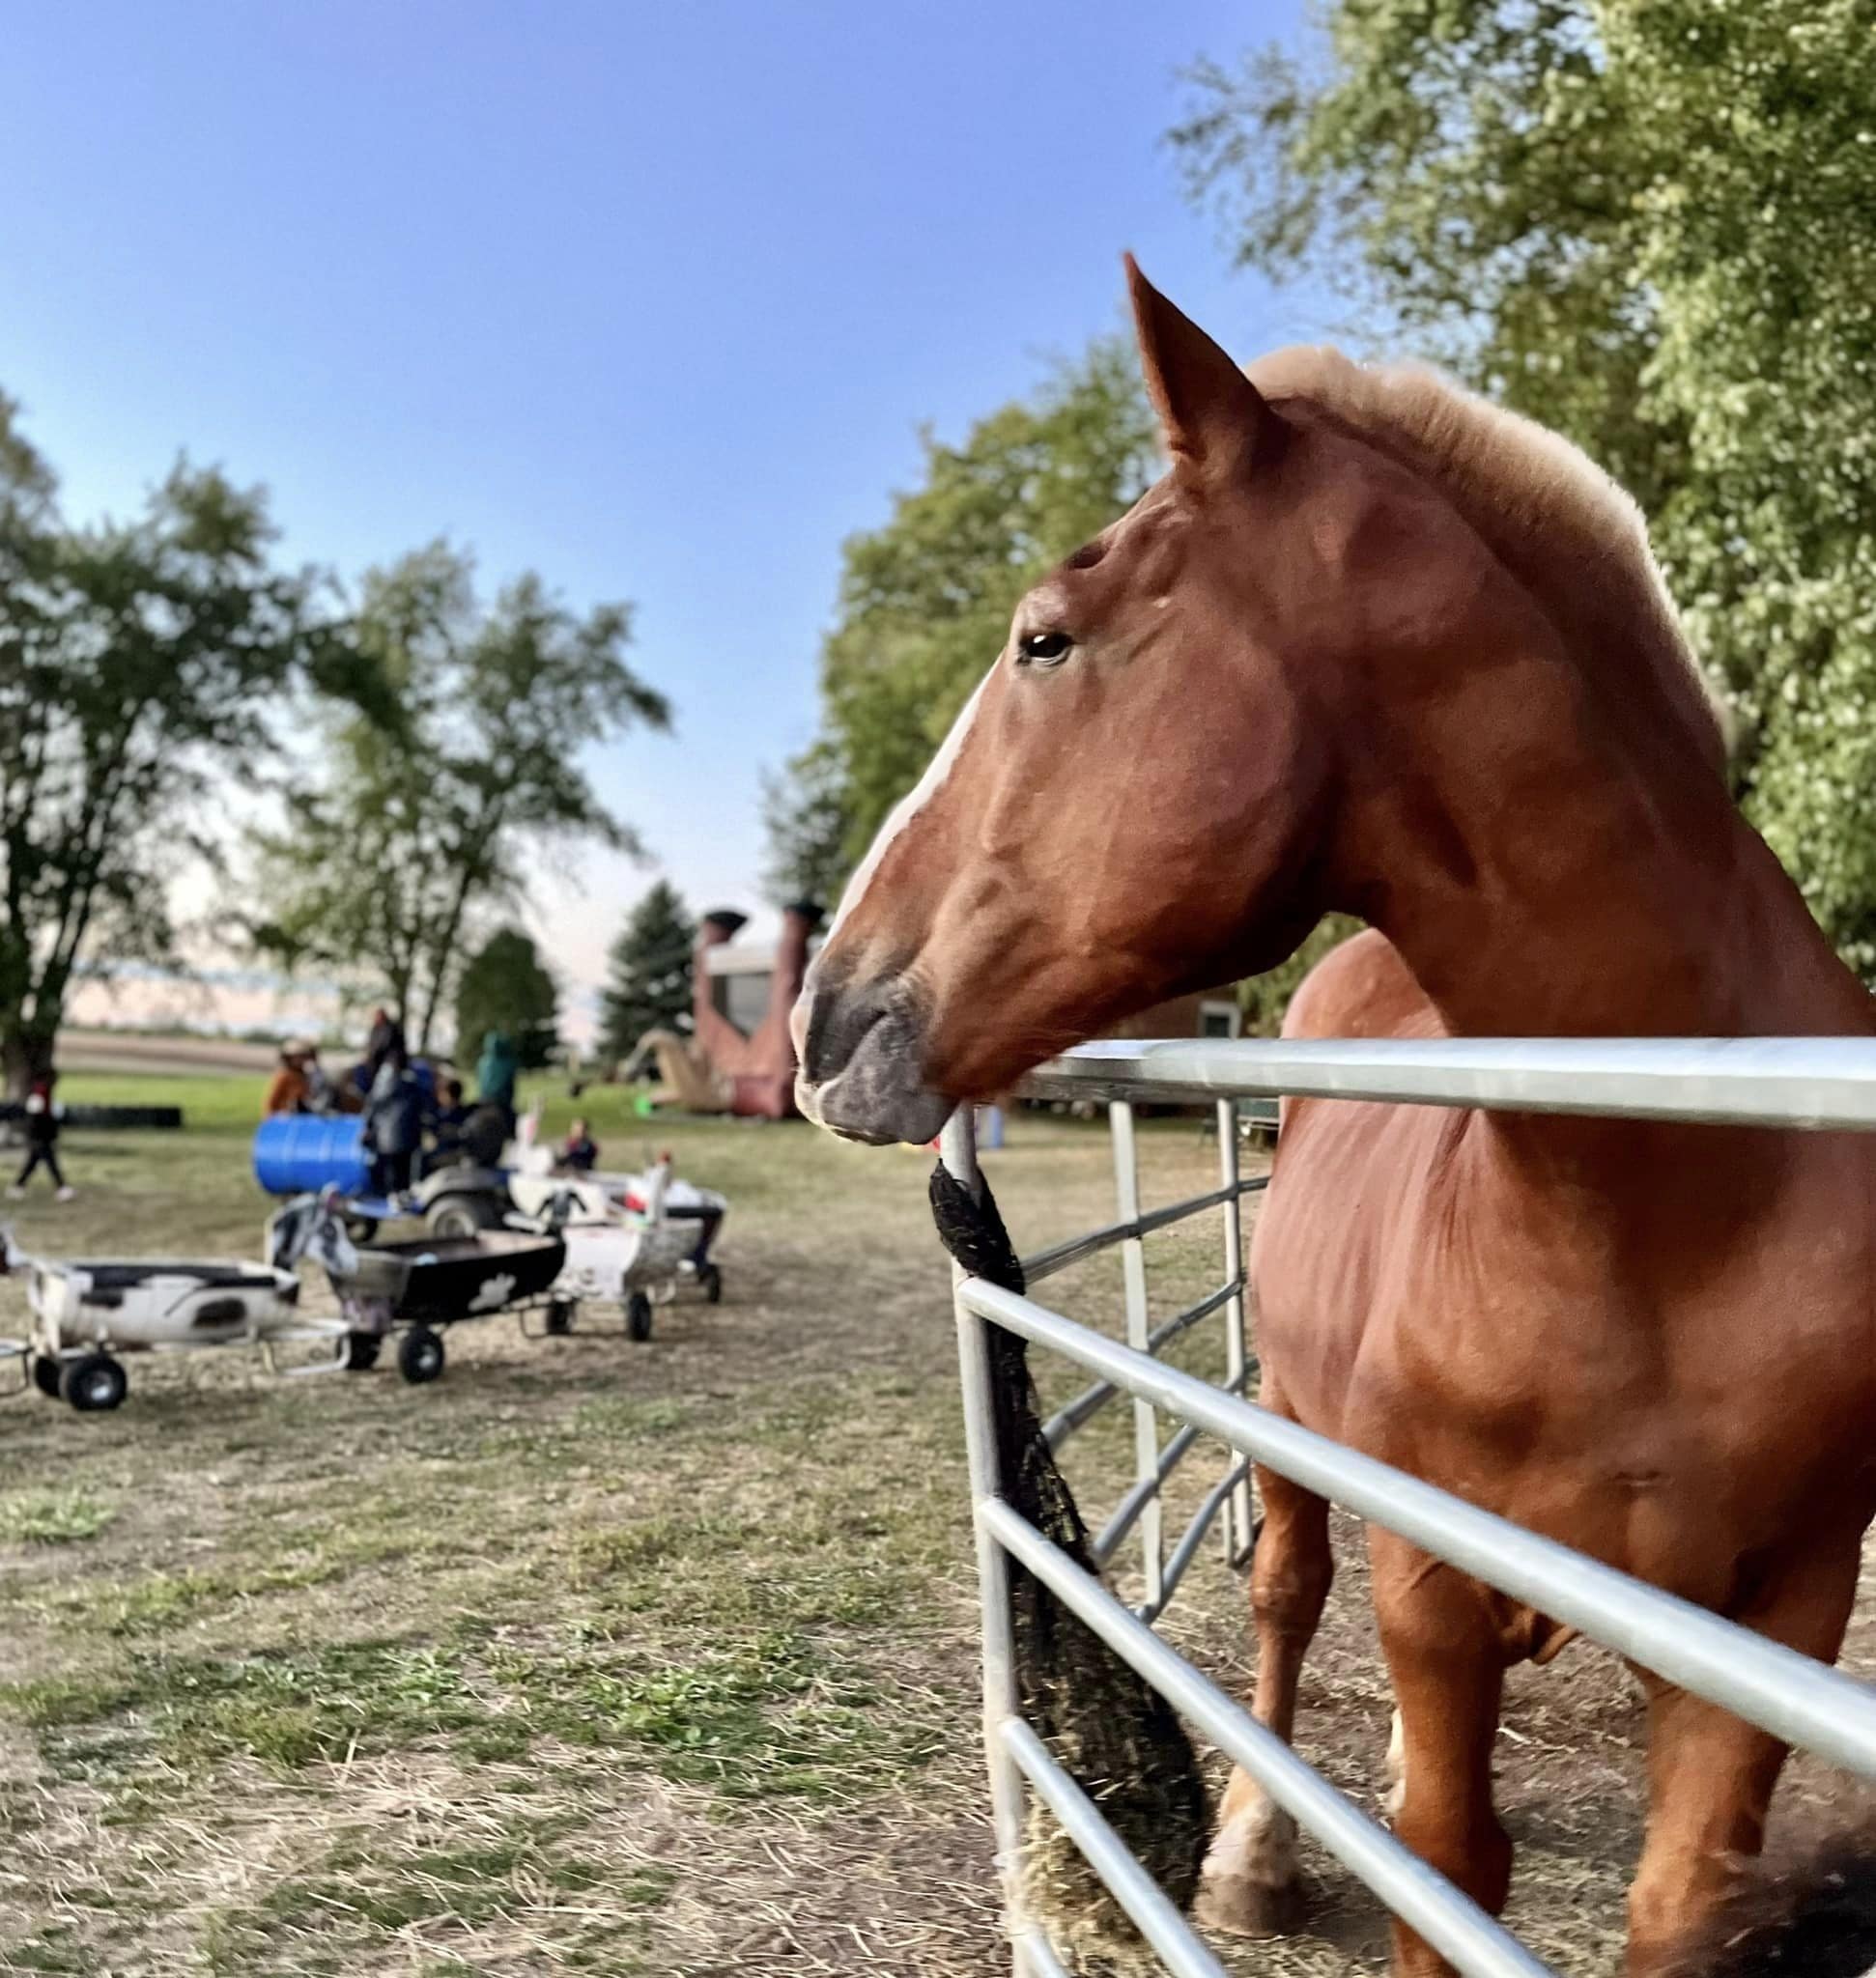 horseback riding ohio, pony farms near me, horseback riding services near me, horse riding service near me, pony ride service, horseback riding columbus oh